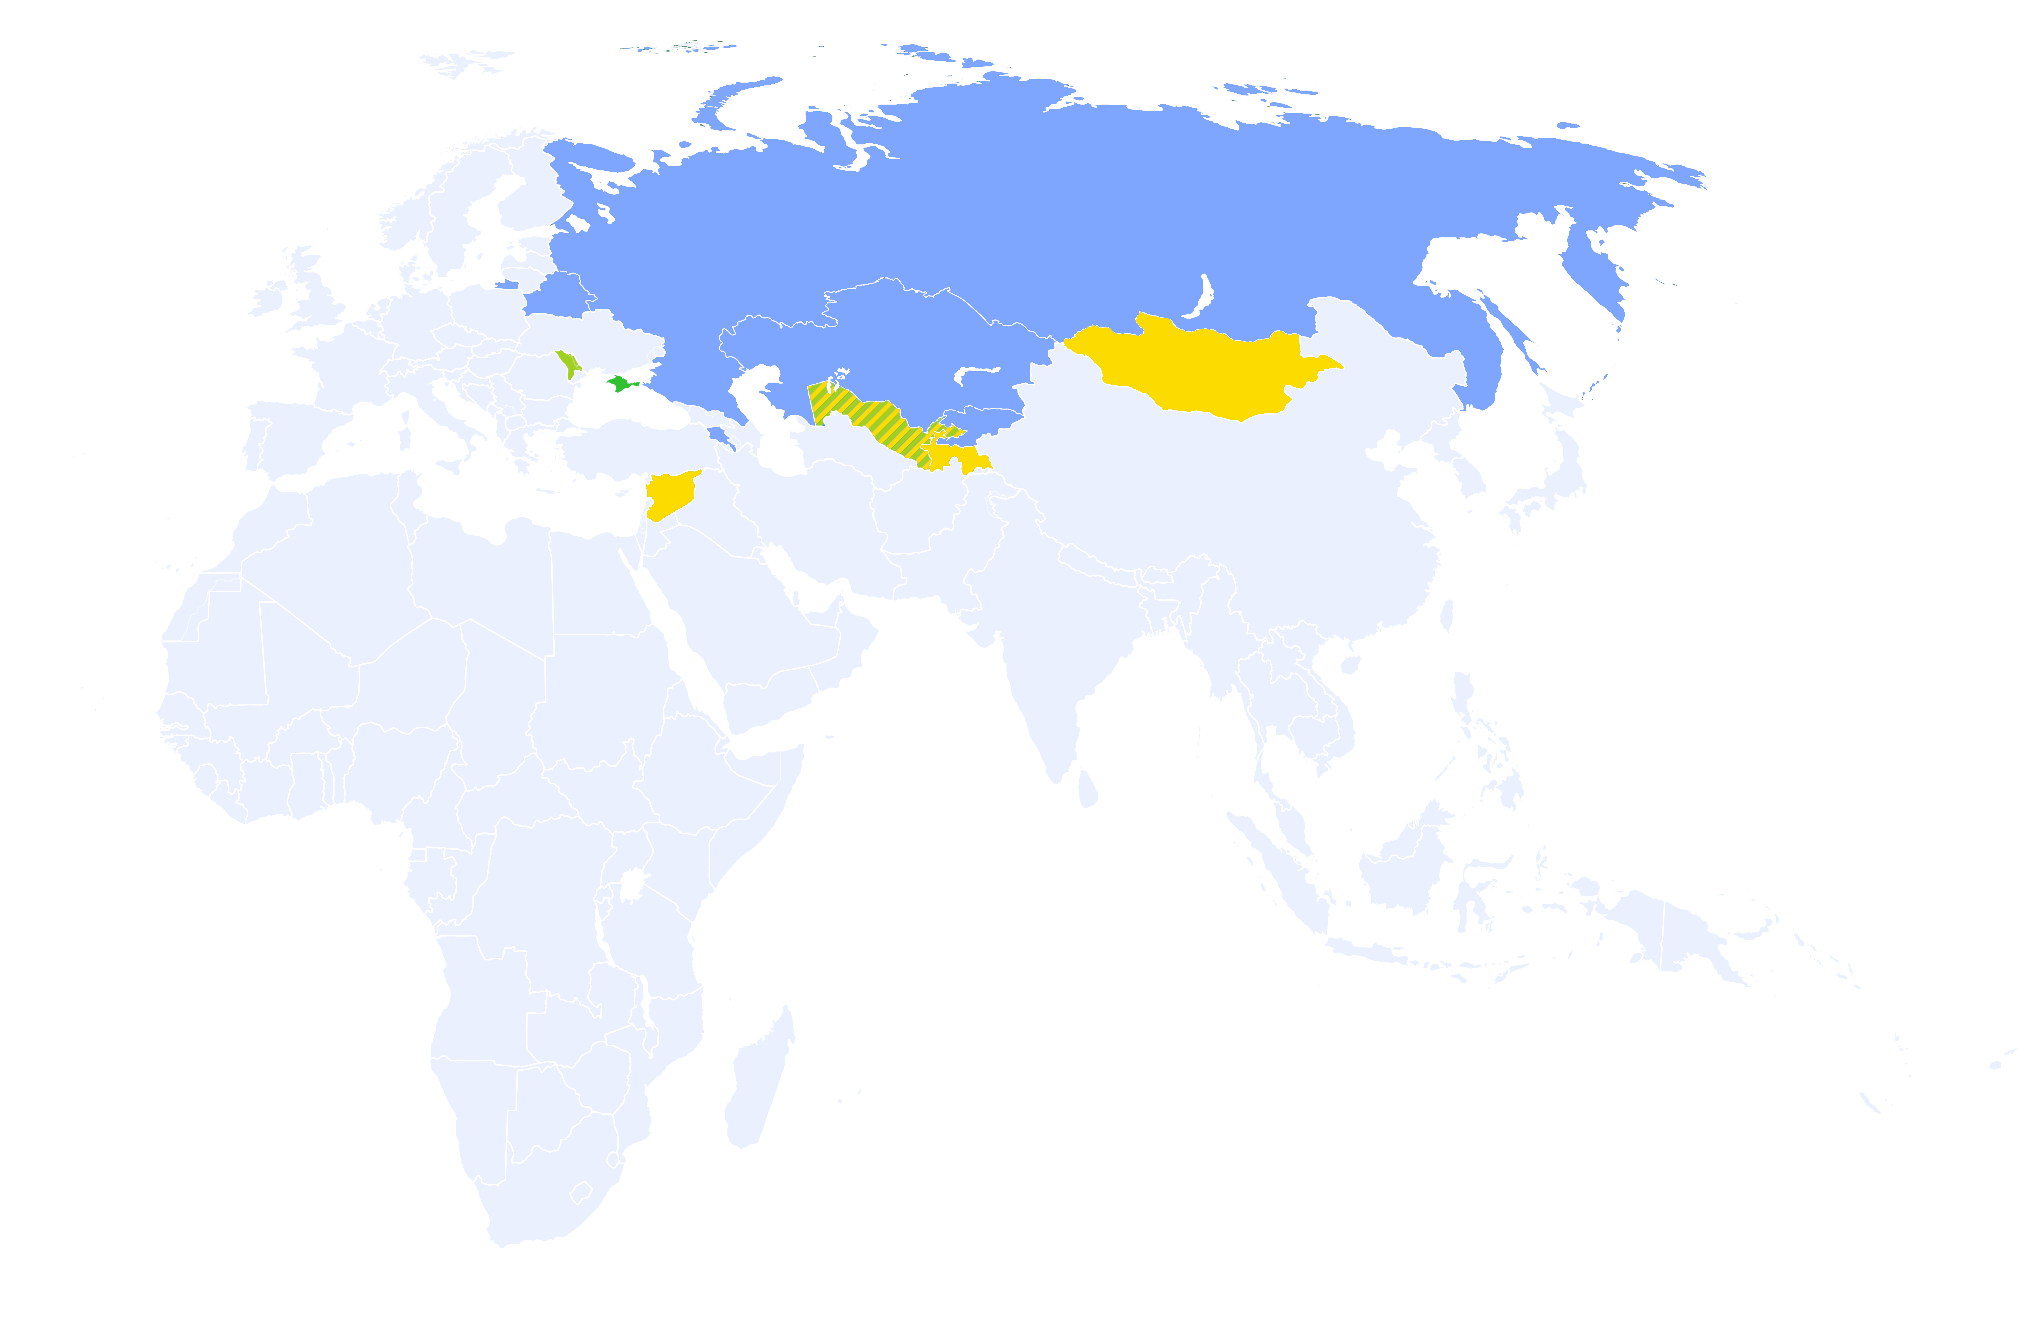 eurasianeconomicunion map,eurasianeconomicunion data,tendata,import export data